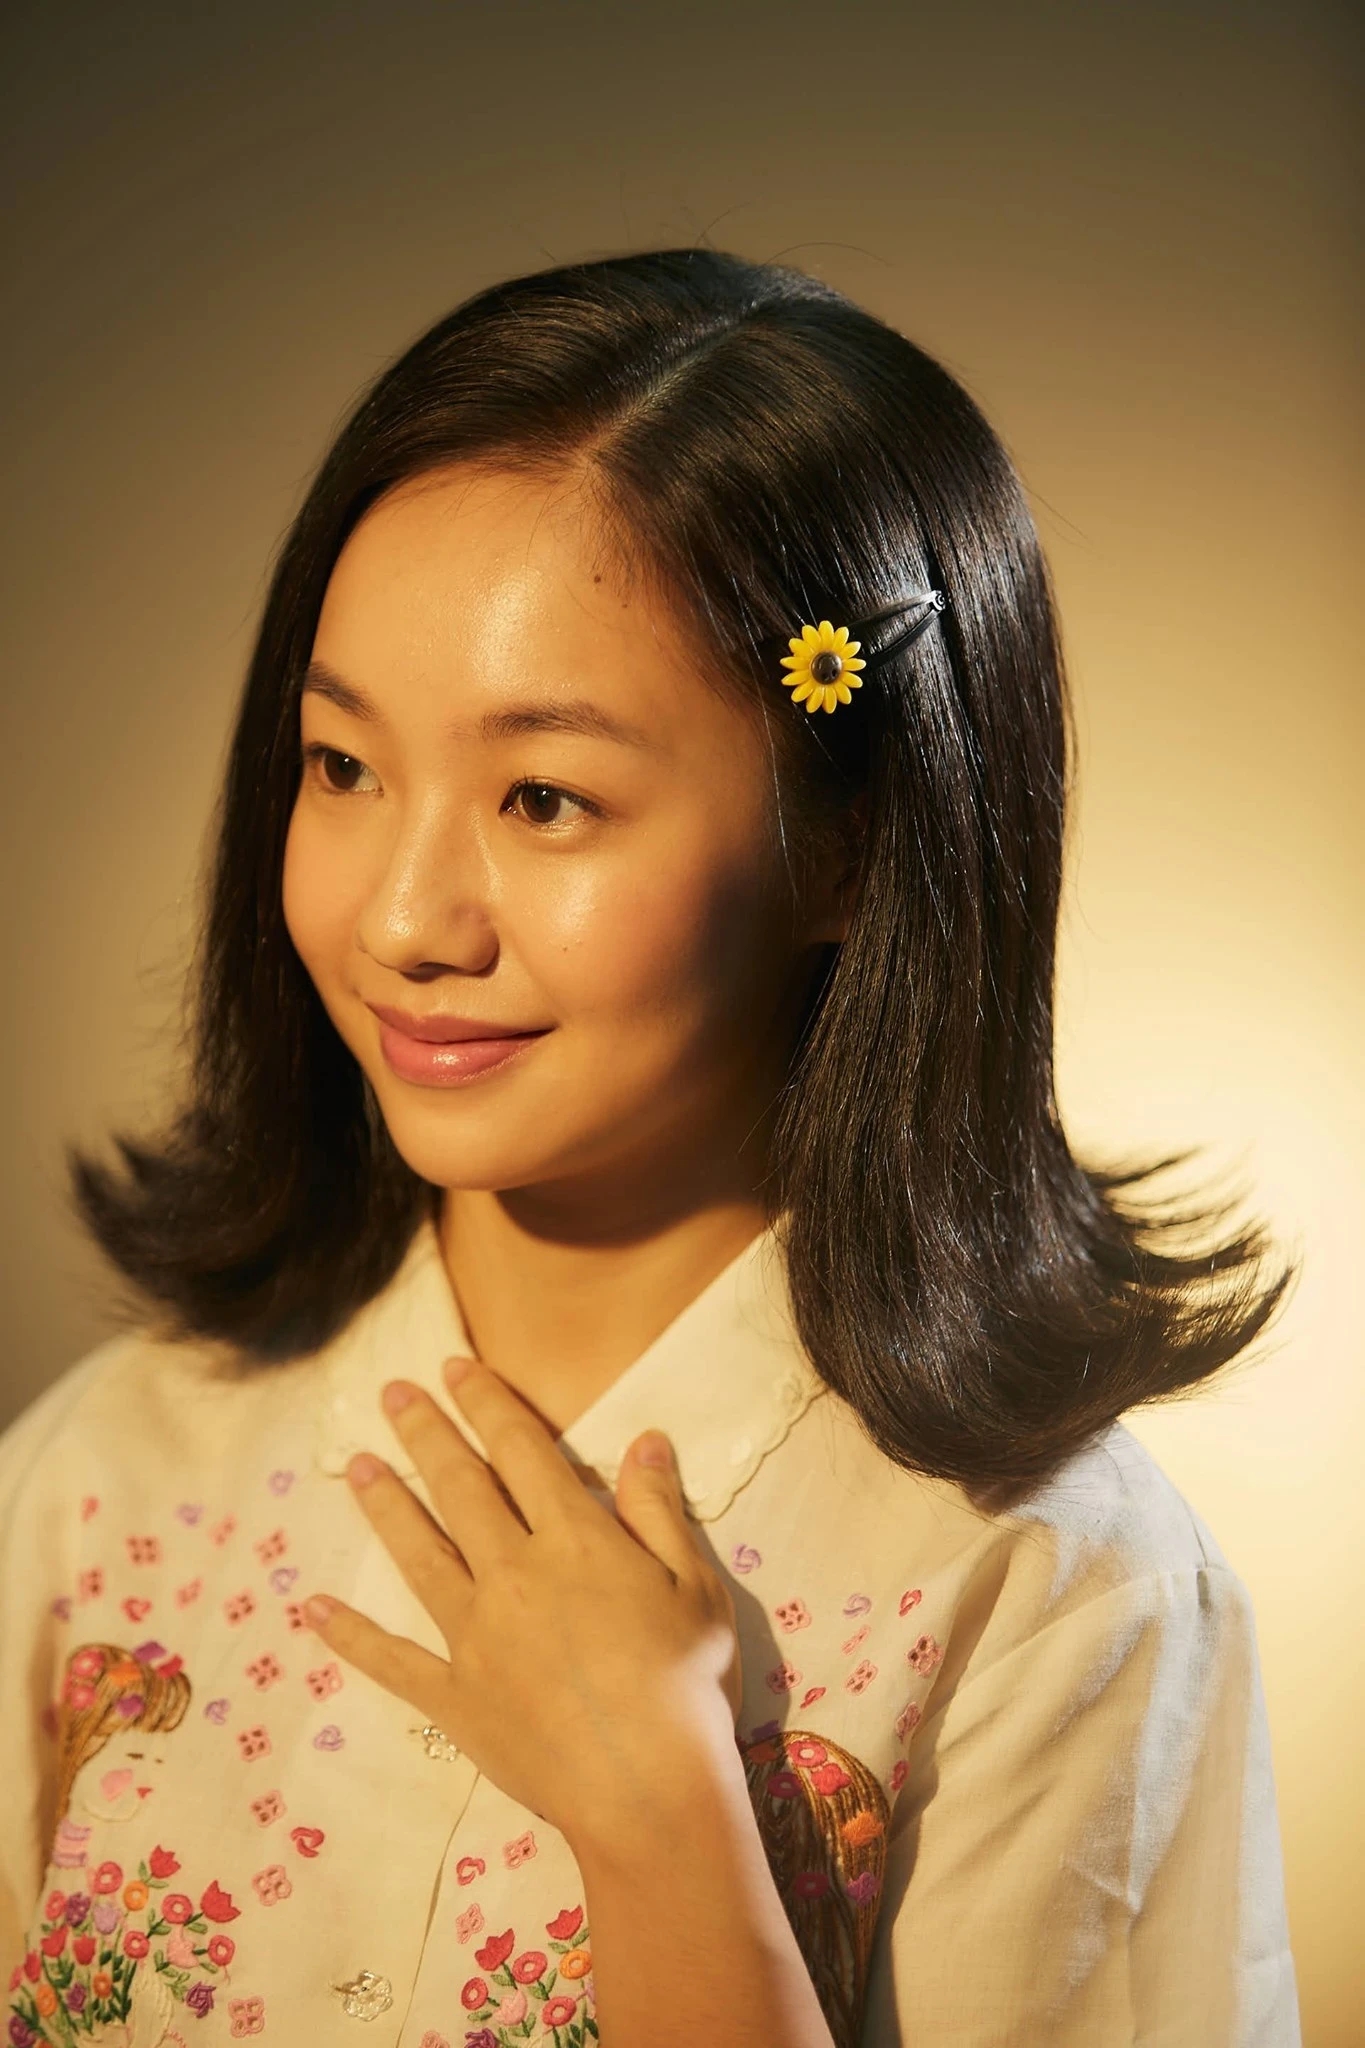 Hoàng Hà sinh năm 1996 tại Hà Nội, cô nàng theo đuổi sự nghiệp diễn xuất từ năm 2015. Cô nàng được thử sức qua các MV ca nhạc, phim ngắn và gần đây nhất năm 2022 là thành công của Dao Ánh - nhân vật Hoàng Hà thủ vai trong bộ phim “Em và Trịnh“.  